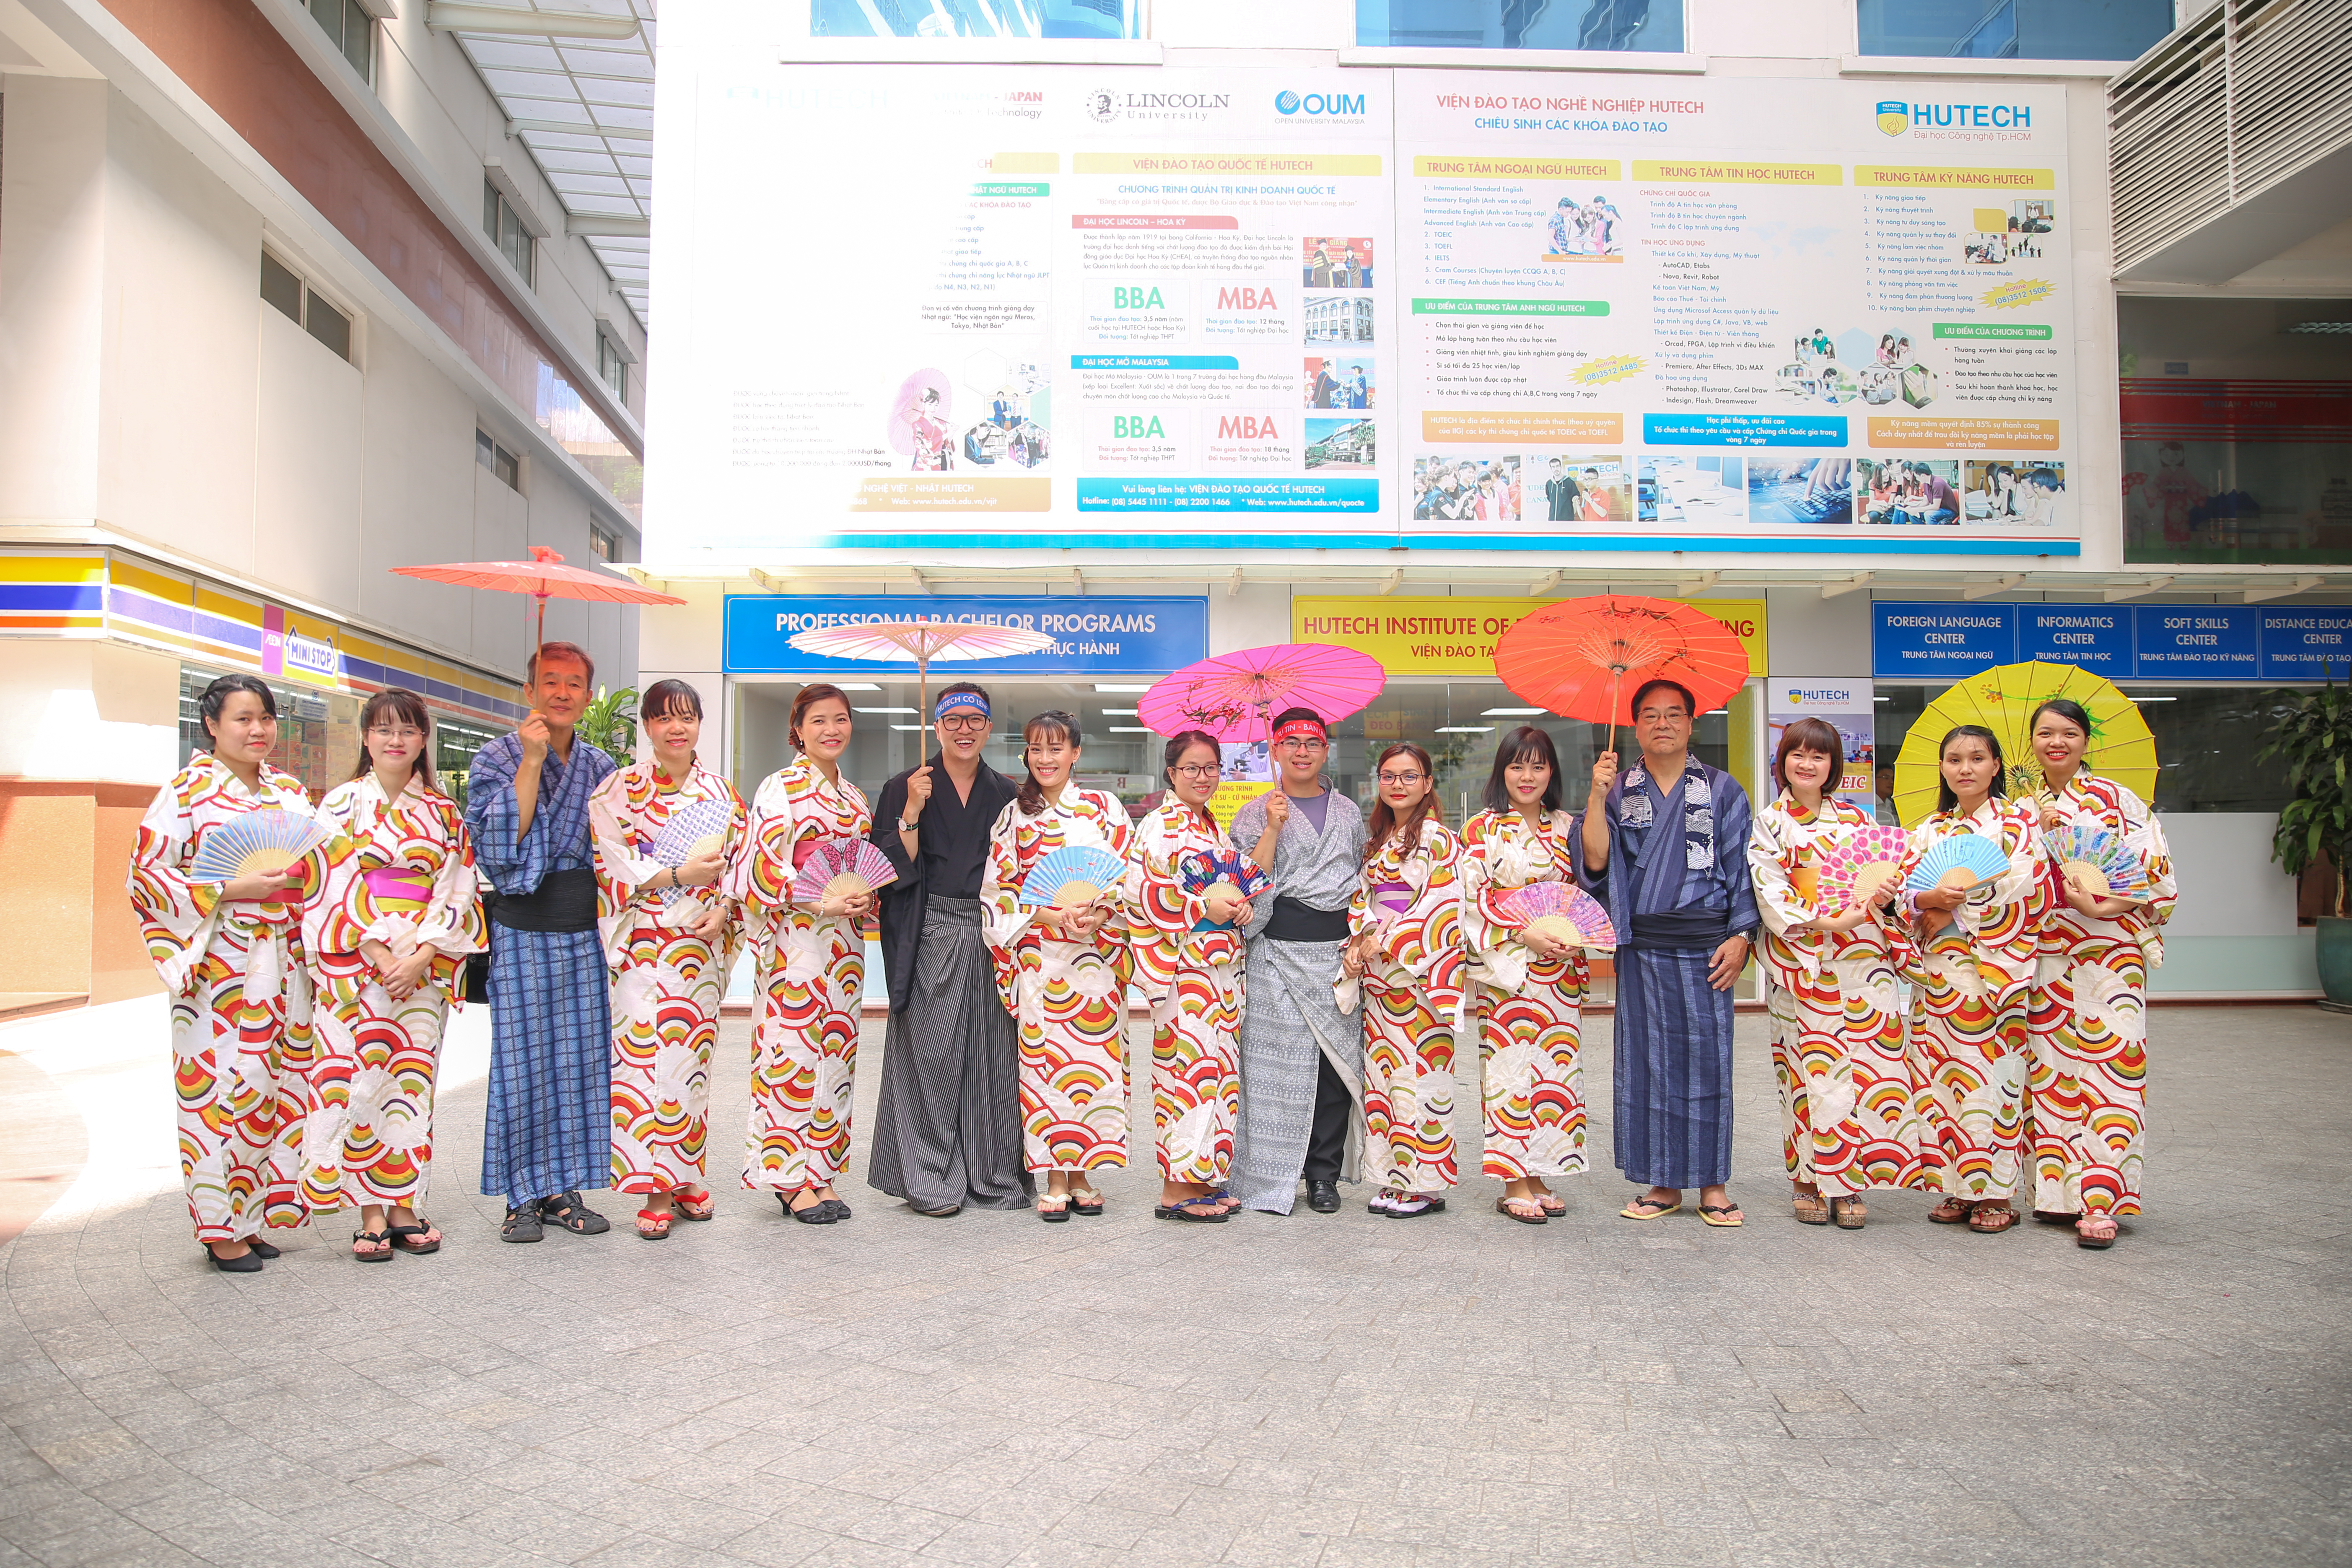 Khoa Nhật Bản học chào mừng ngày 20/11 trong trang phục truyền thống Nhật Bản 21